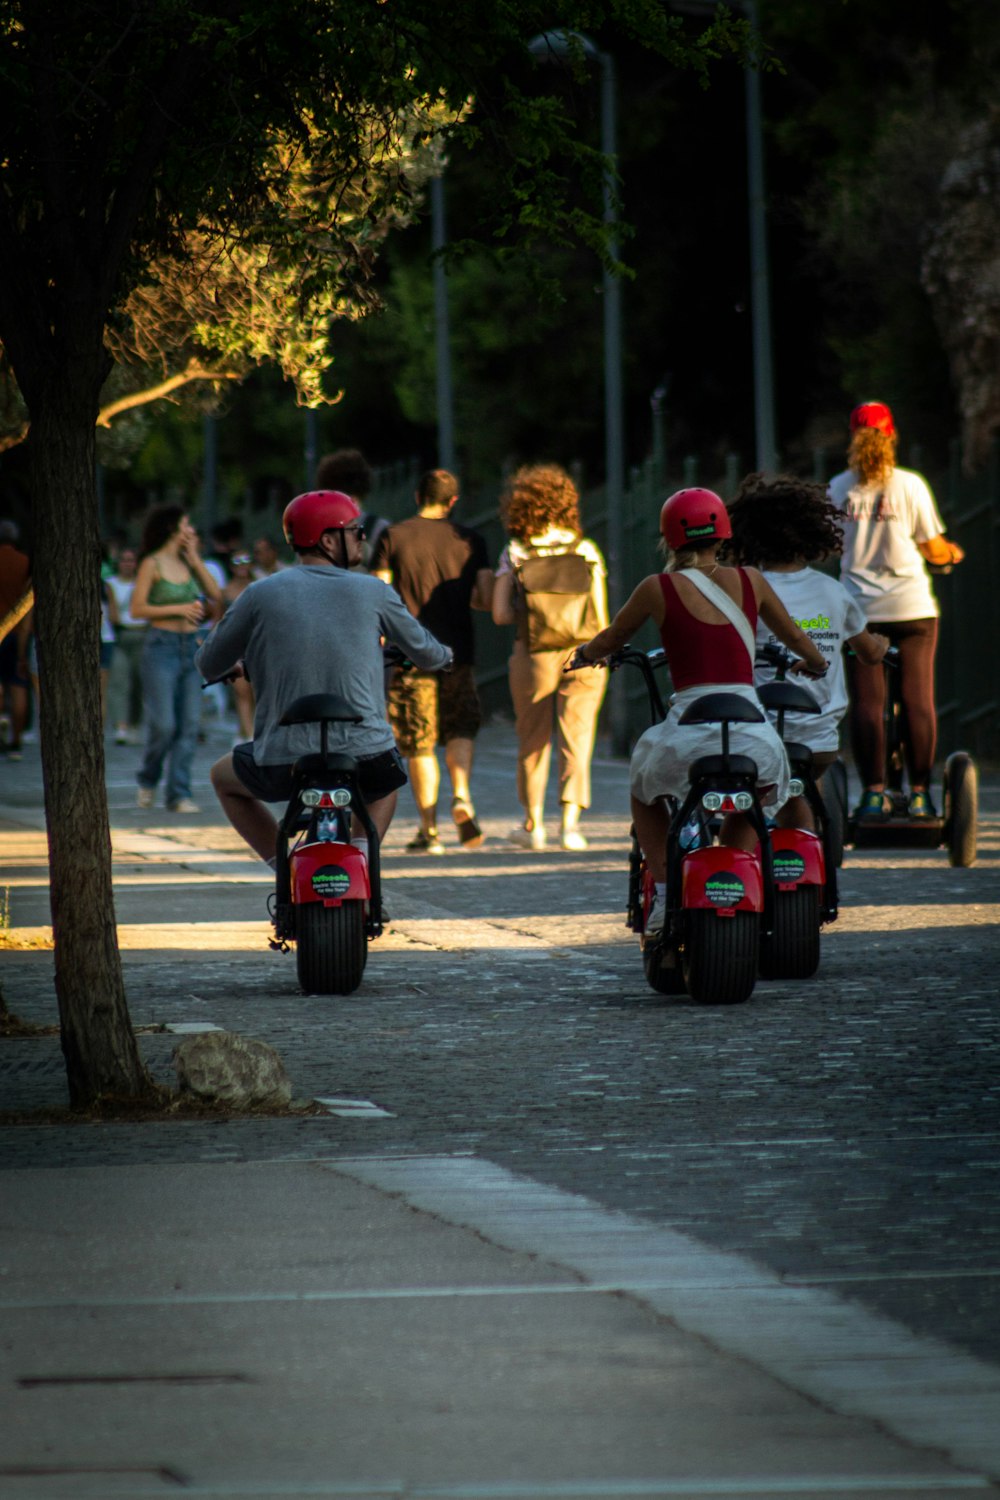 Gente montando scooters en la calle